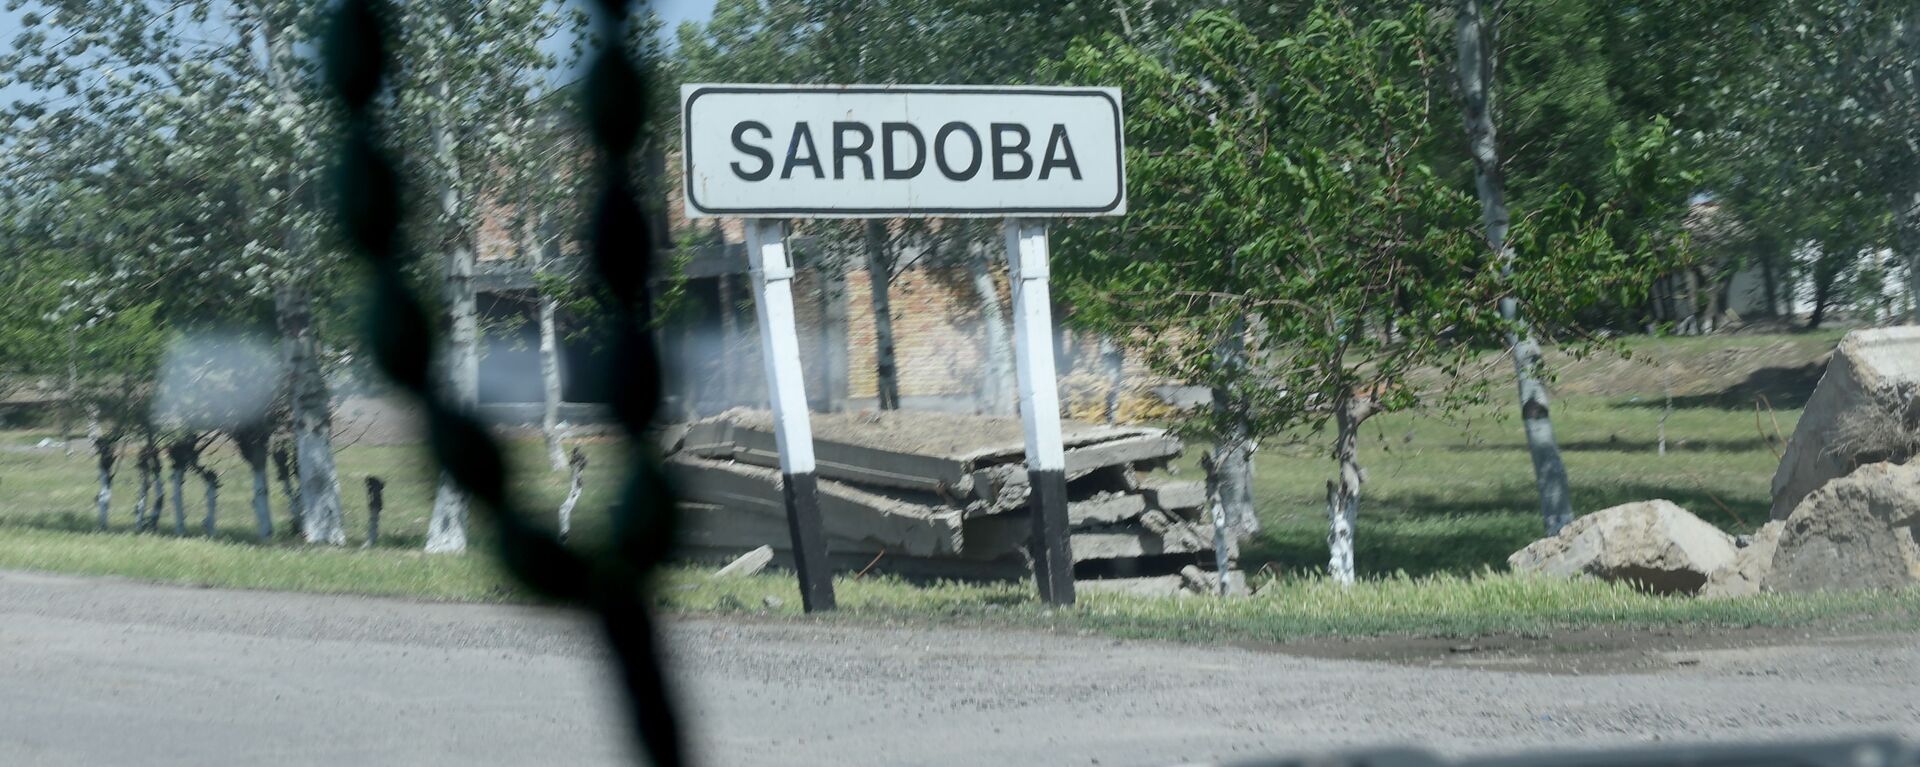 Въезд в поселок Сардоба, пострадавший от наводнения - Sputnik Ўзбекистон, 1920, 05.06.2020